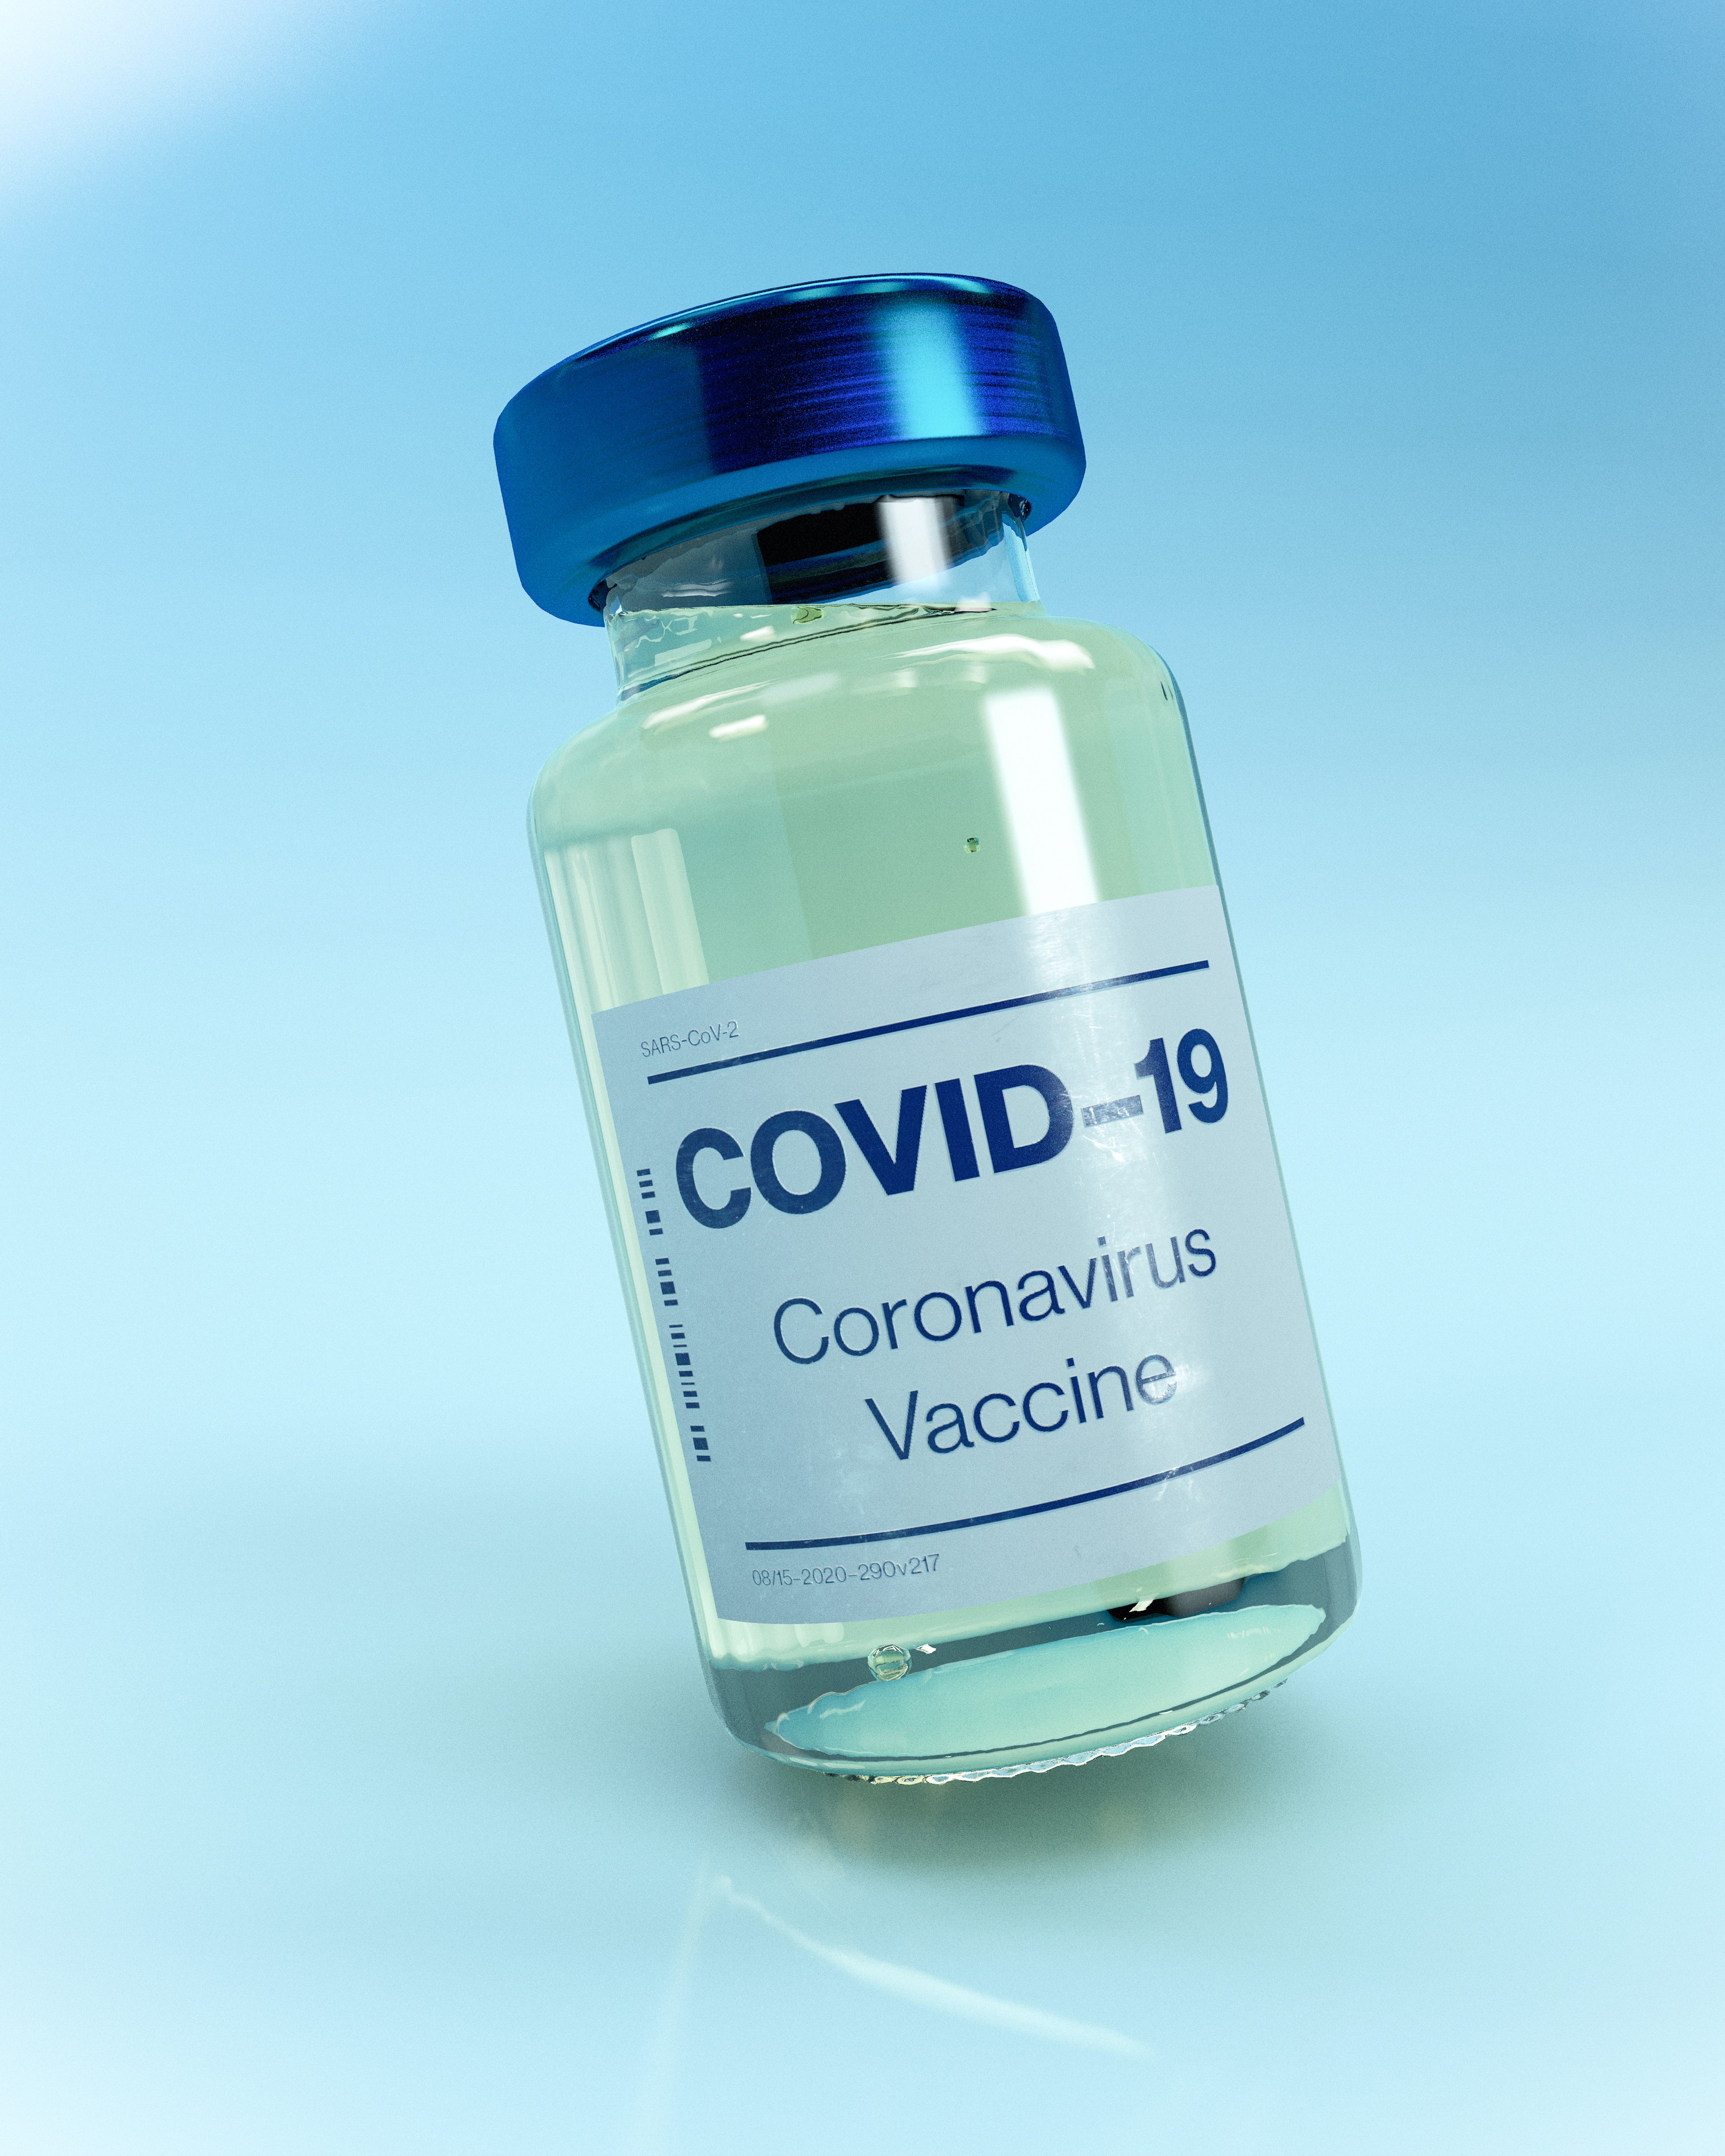 En el mundo, actualmente se están desarrollando 69 ensayos clínicos con candidatas vacunales en seres humanos para Covid-19. Veinte ya alcanzaron la fase final de la evaluación para conocer eficacia y seguridad. También hay 89 candidatas vacunales en estudios preclínicos en animales. 